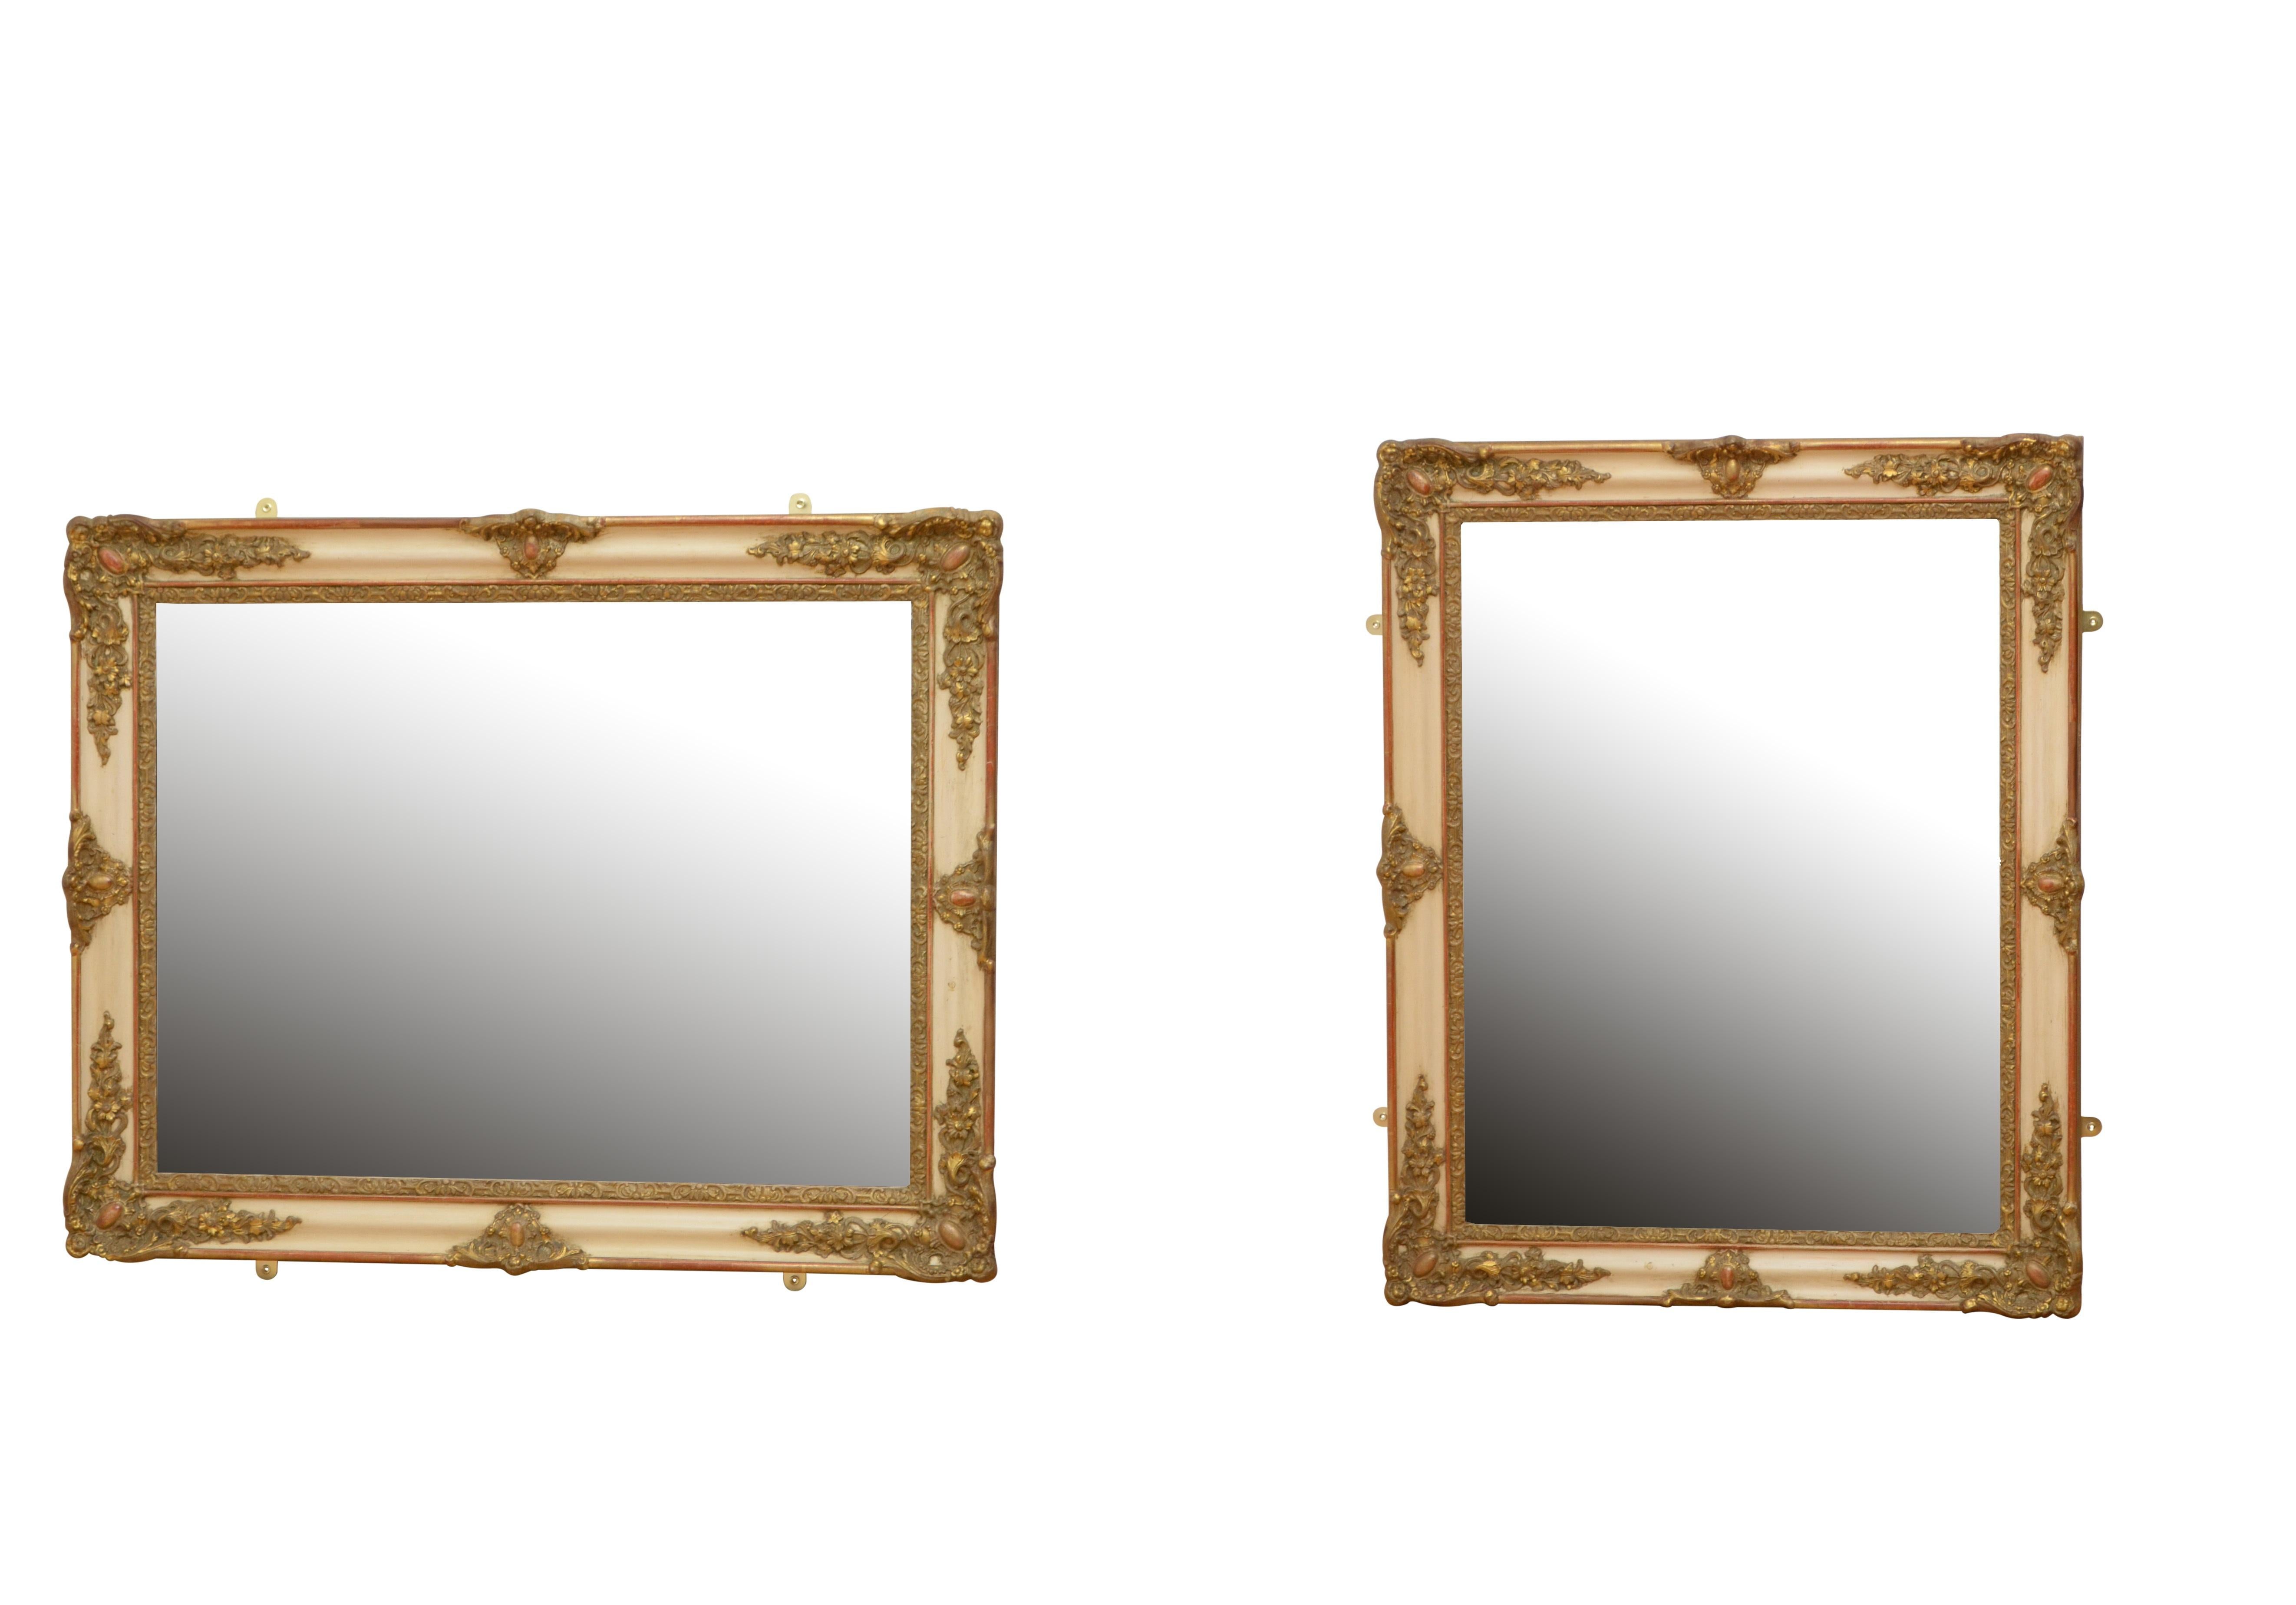 K0461 Wandspiegel aus dem 19. Jahrhundert mit vielseitiger Form, der sowohl im Hoch- als auch im Querformat aufgestellt werden kann, mit originaler Spiegelplatte mit hervorragender Stockfleckigkeit in schön geschnitztem und vergoldetem Rahmen.